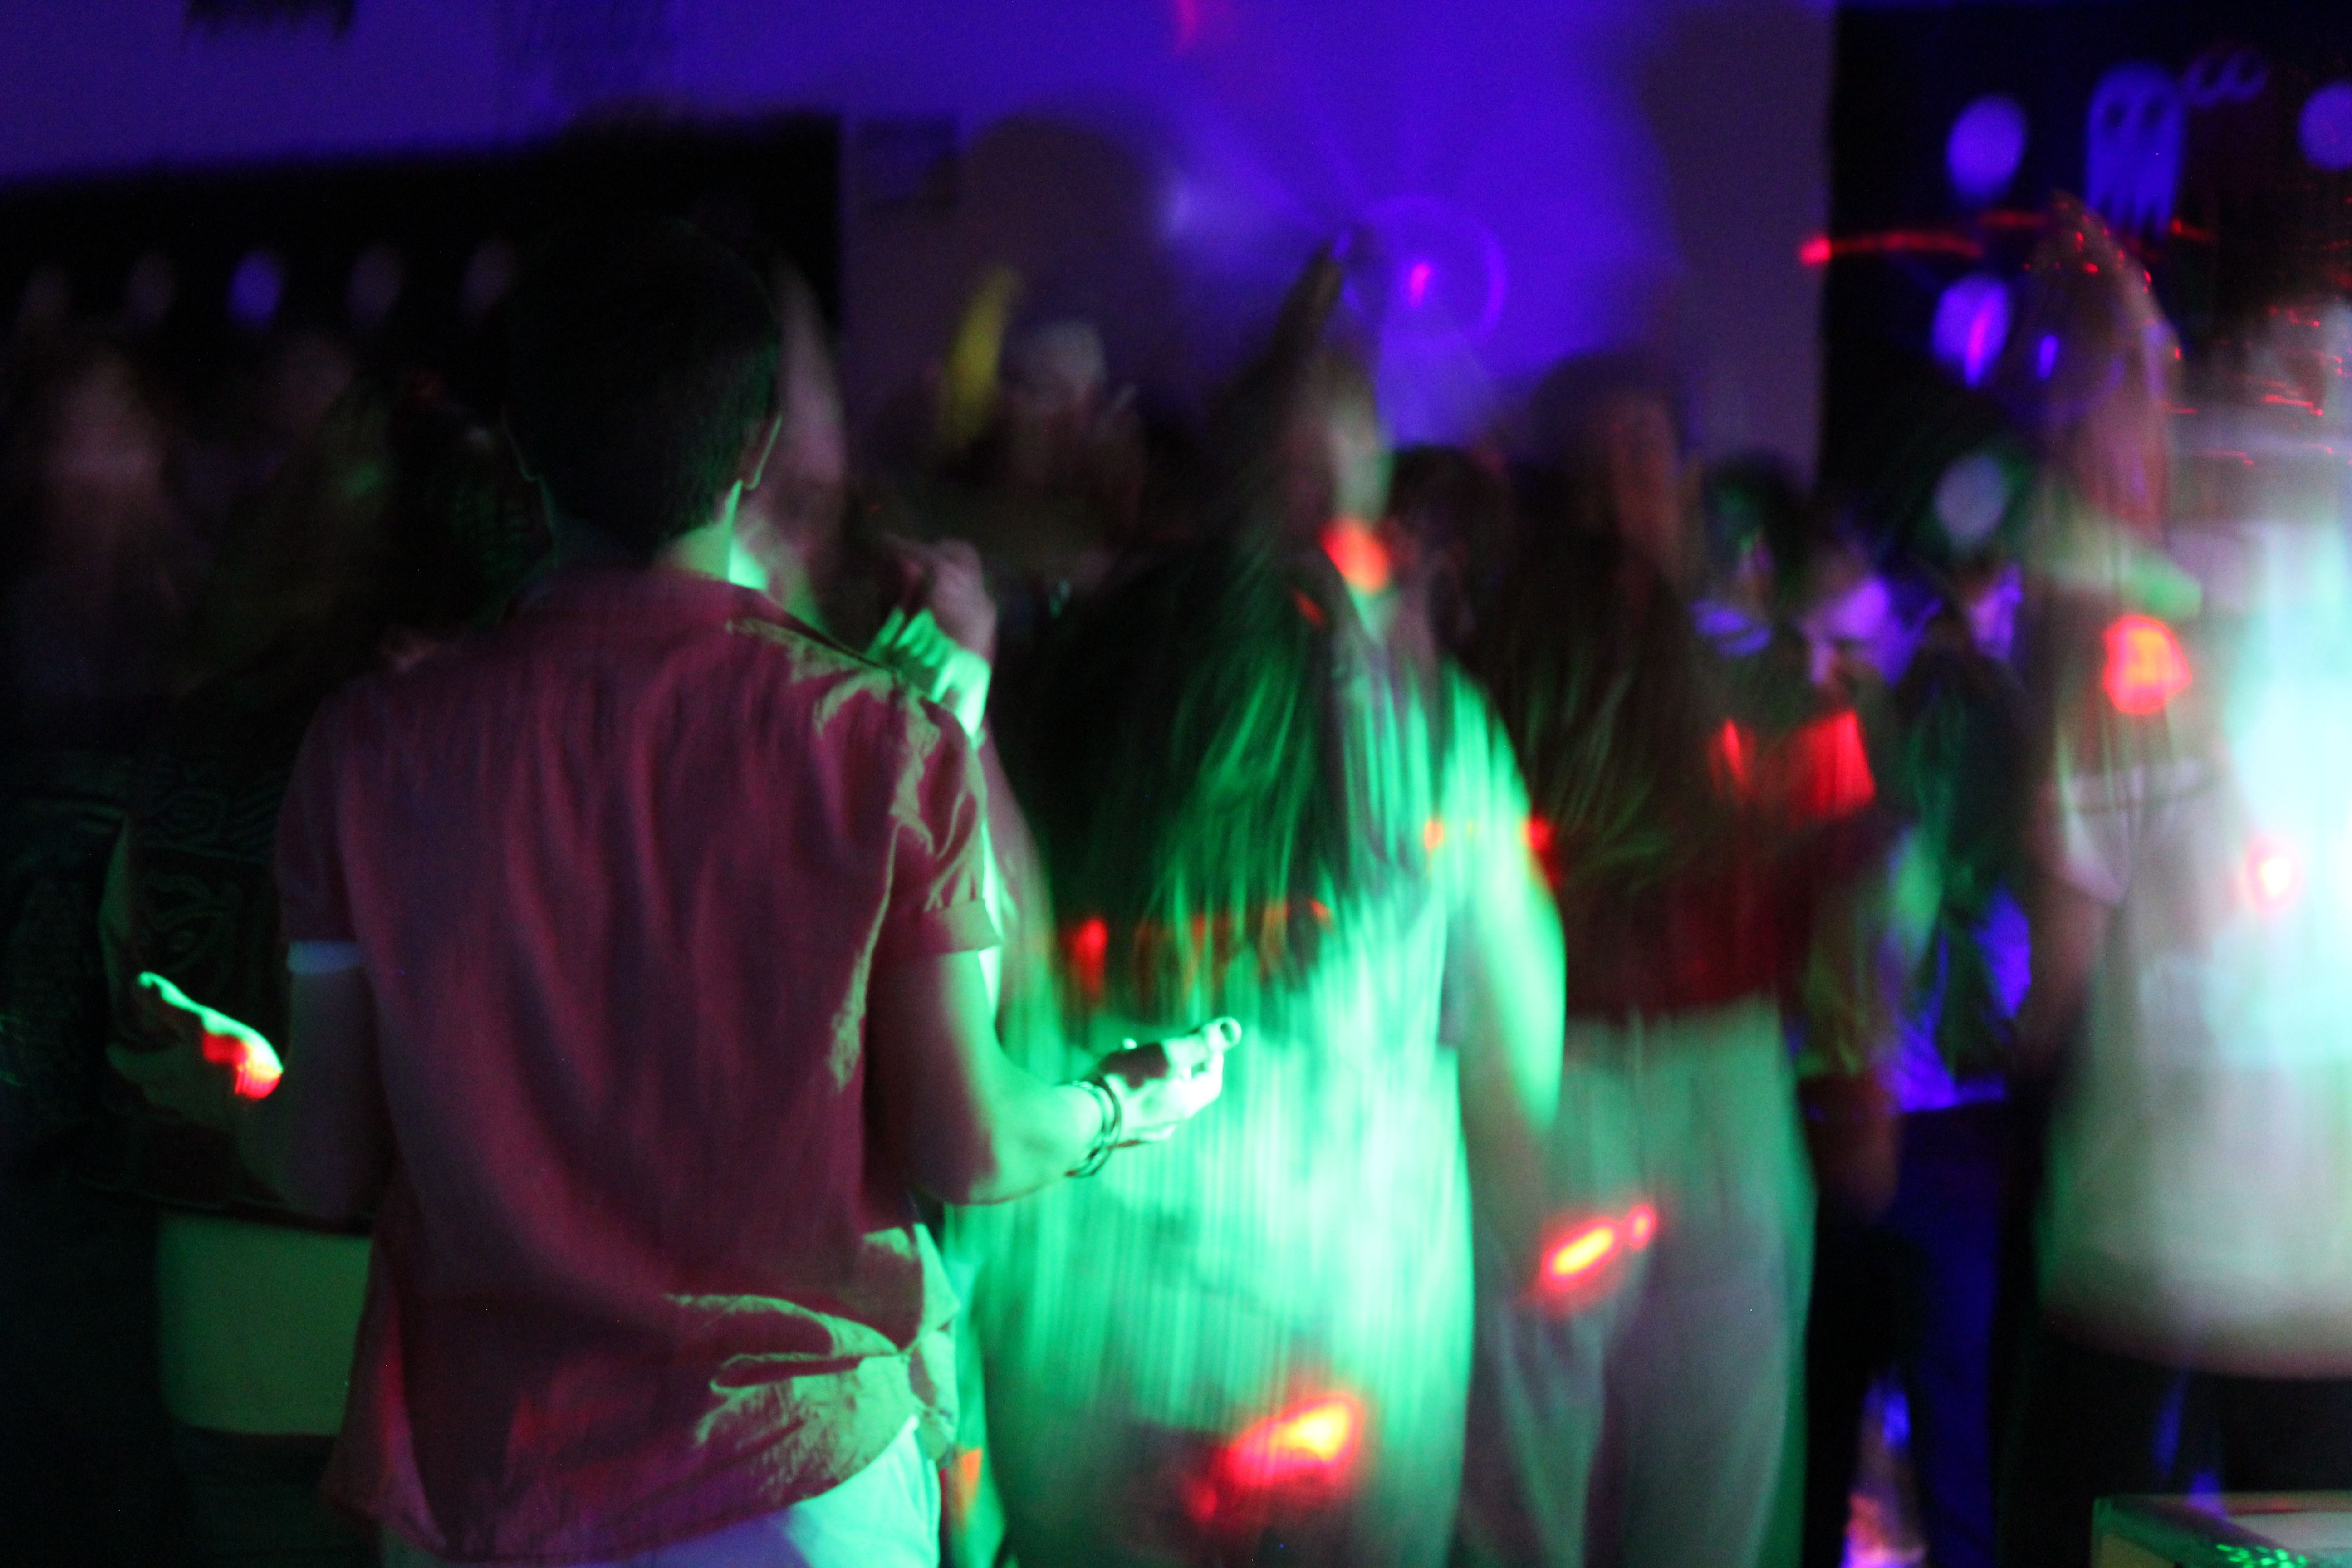 aesthetic people dancing neon 80s. High school dance, Yearbook photo, School dances